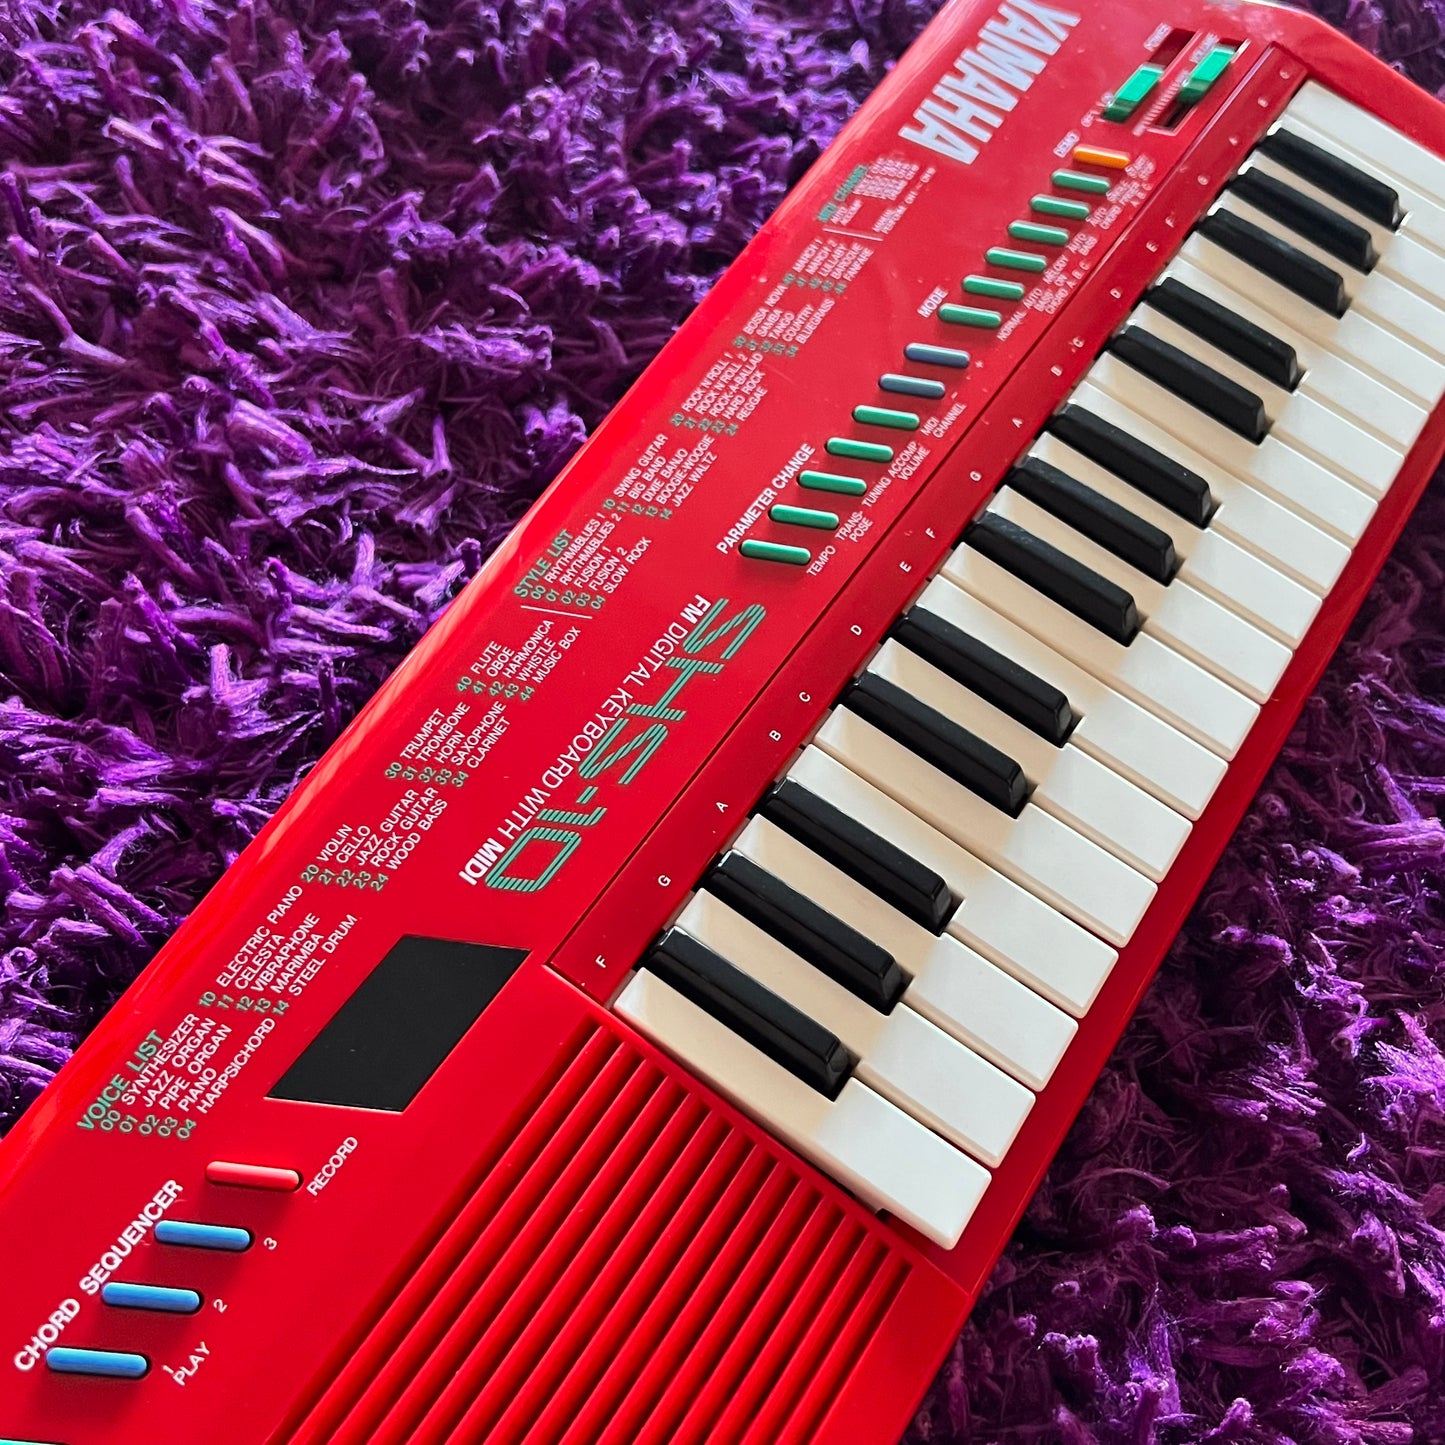 Yamaha SHS-10 Keytar Red (Made in Japan)